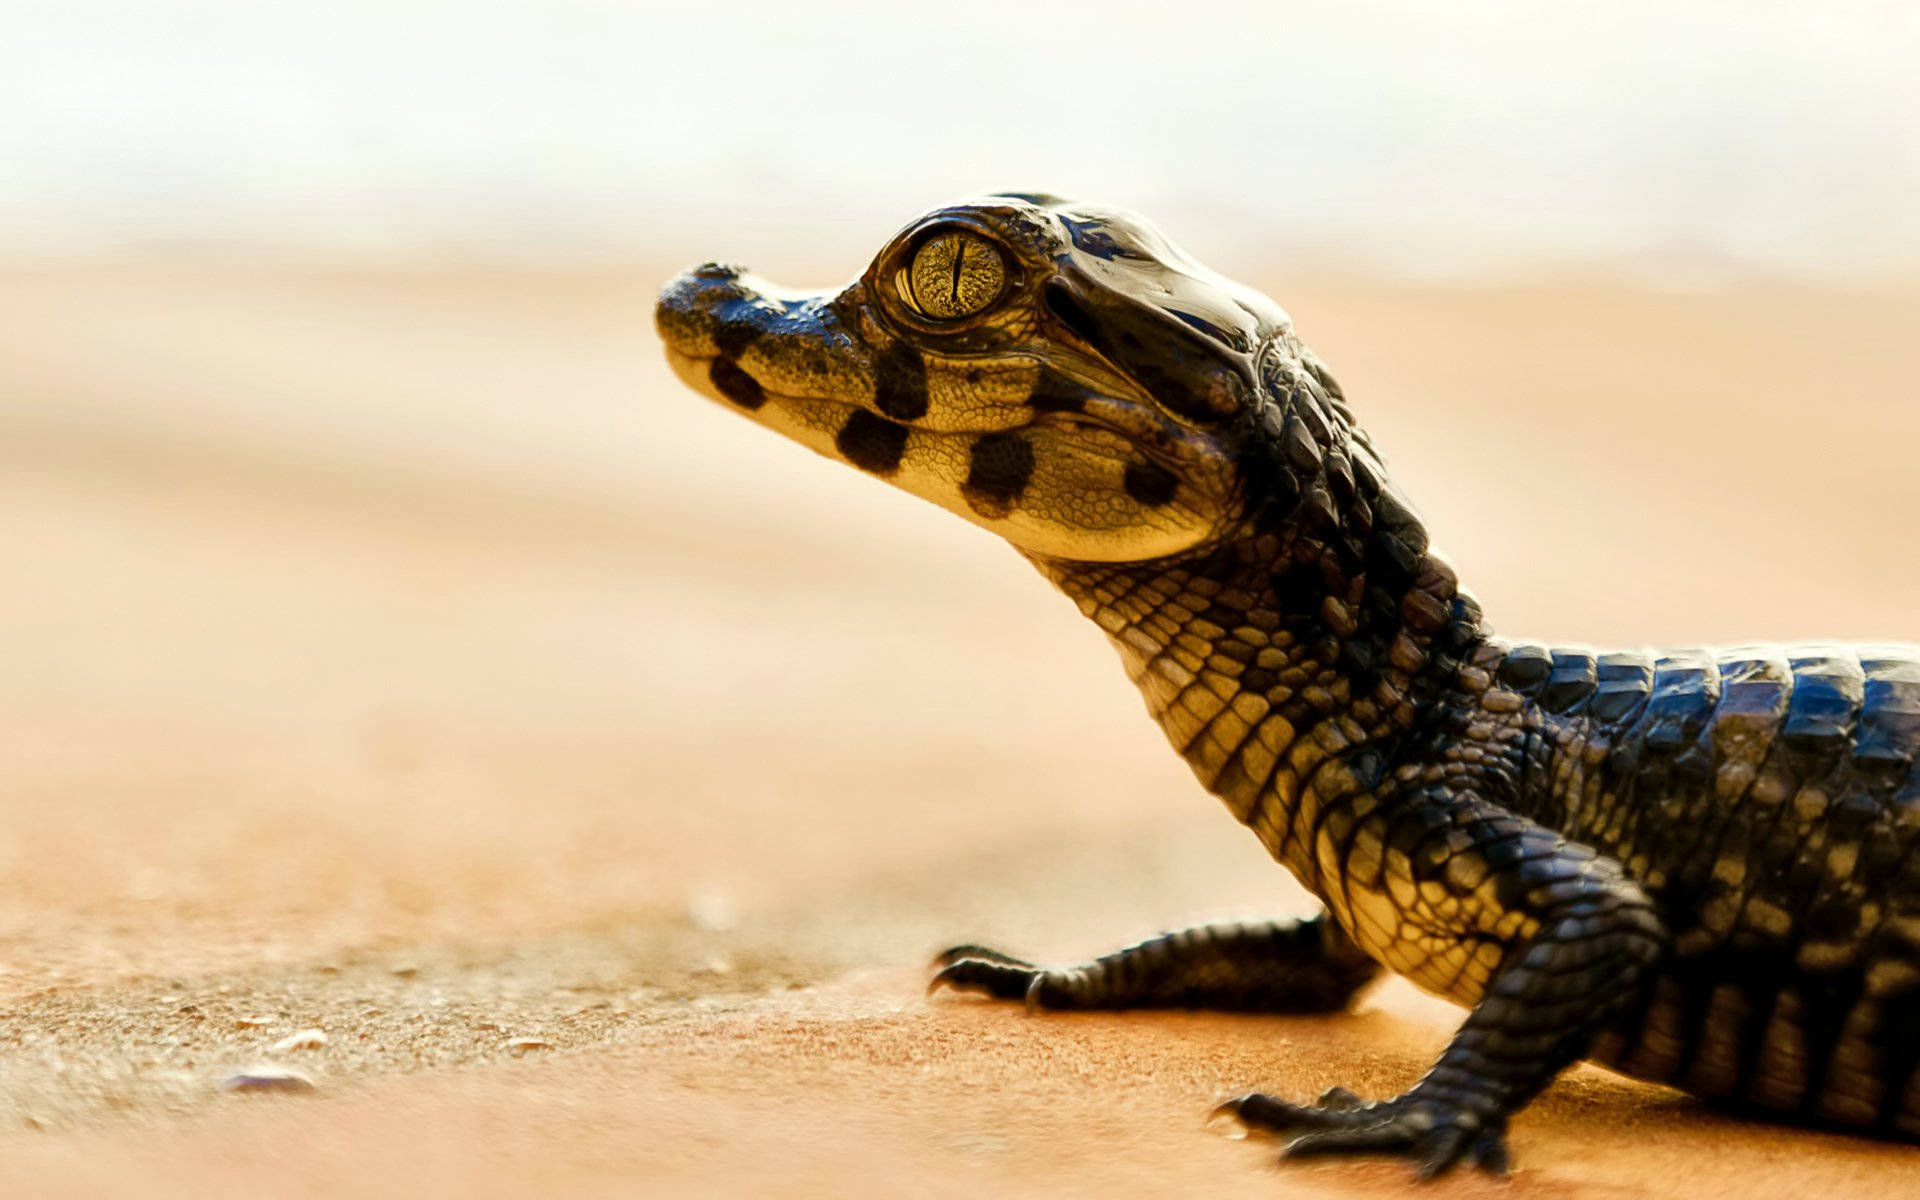 Little Caiman Walks On The Desert Surface In A Closeup Focus Photograph